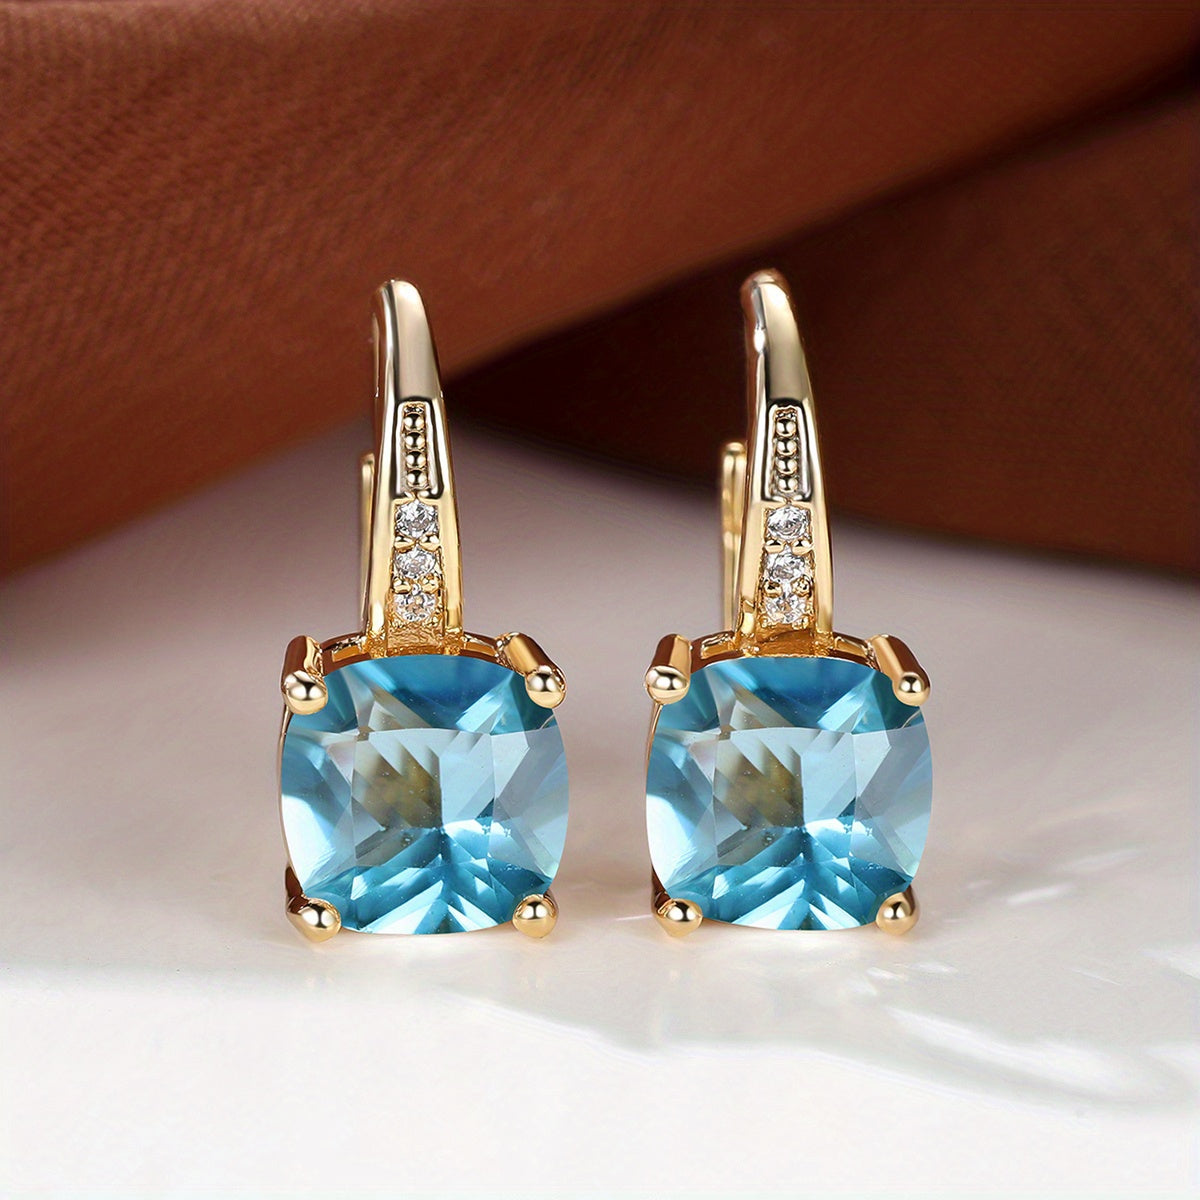 Mystic Square Rainbow Color Zircon Earrings Vintage Wedding Earrings For Women Fine Jewelry